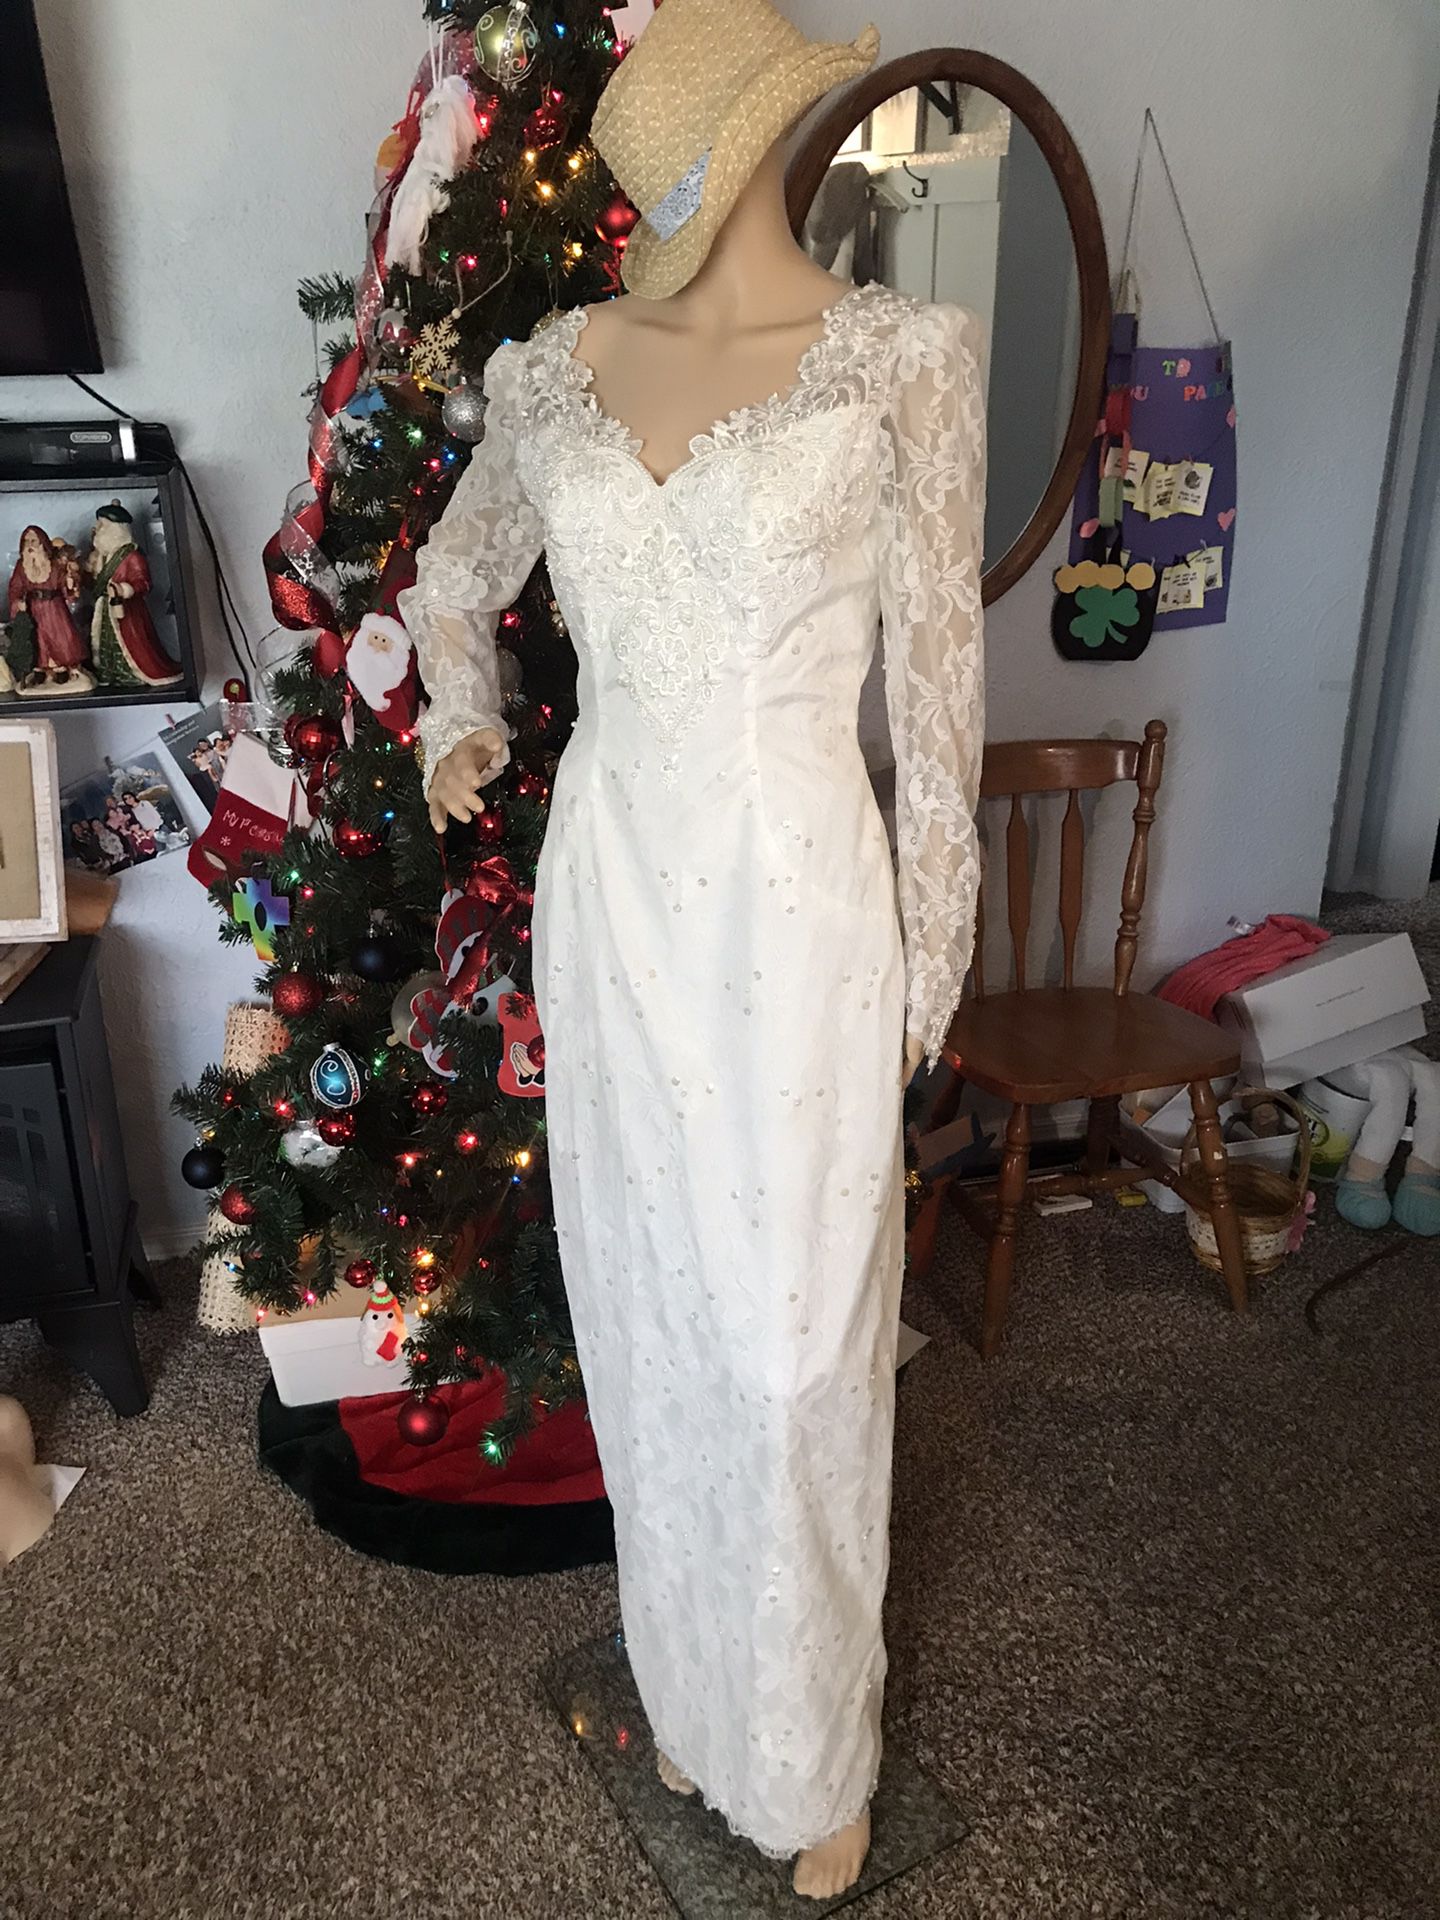 Beautiful Wedding Dress Size Small 58” Tall